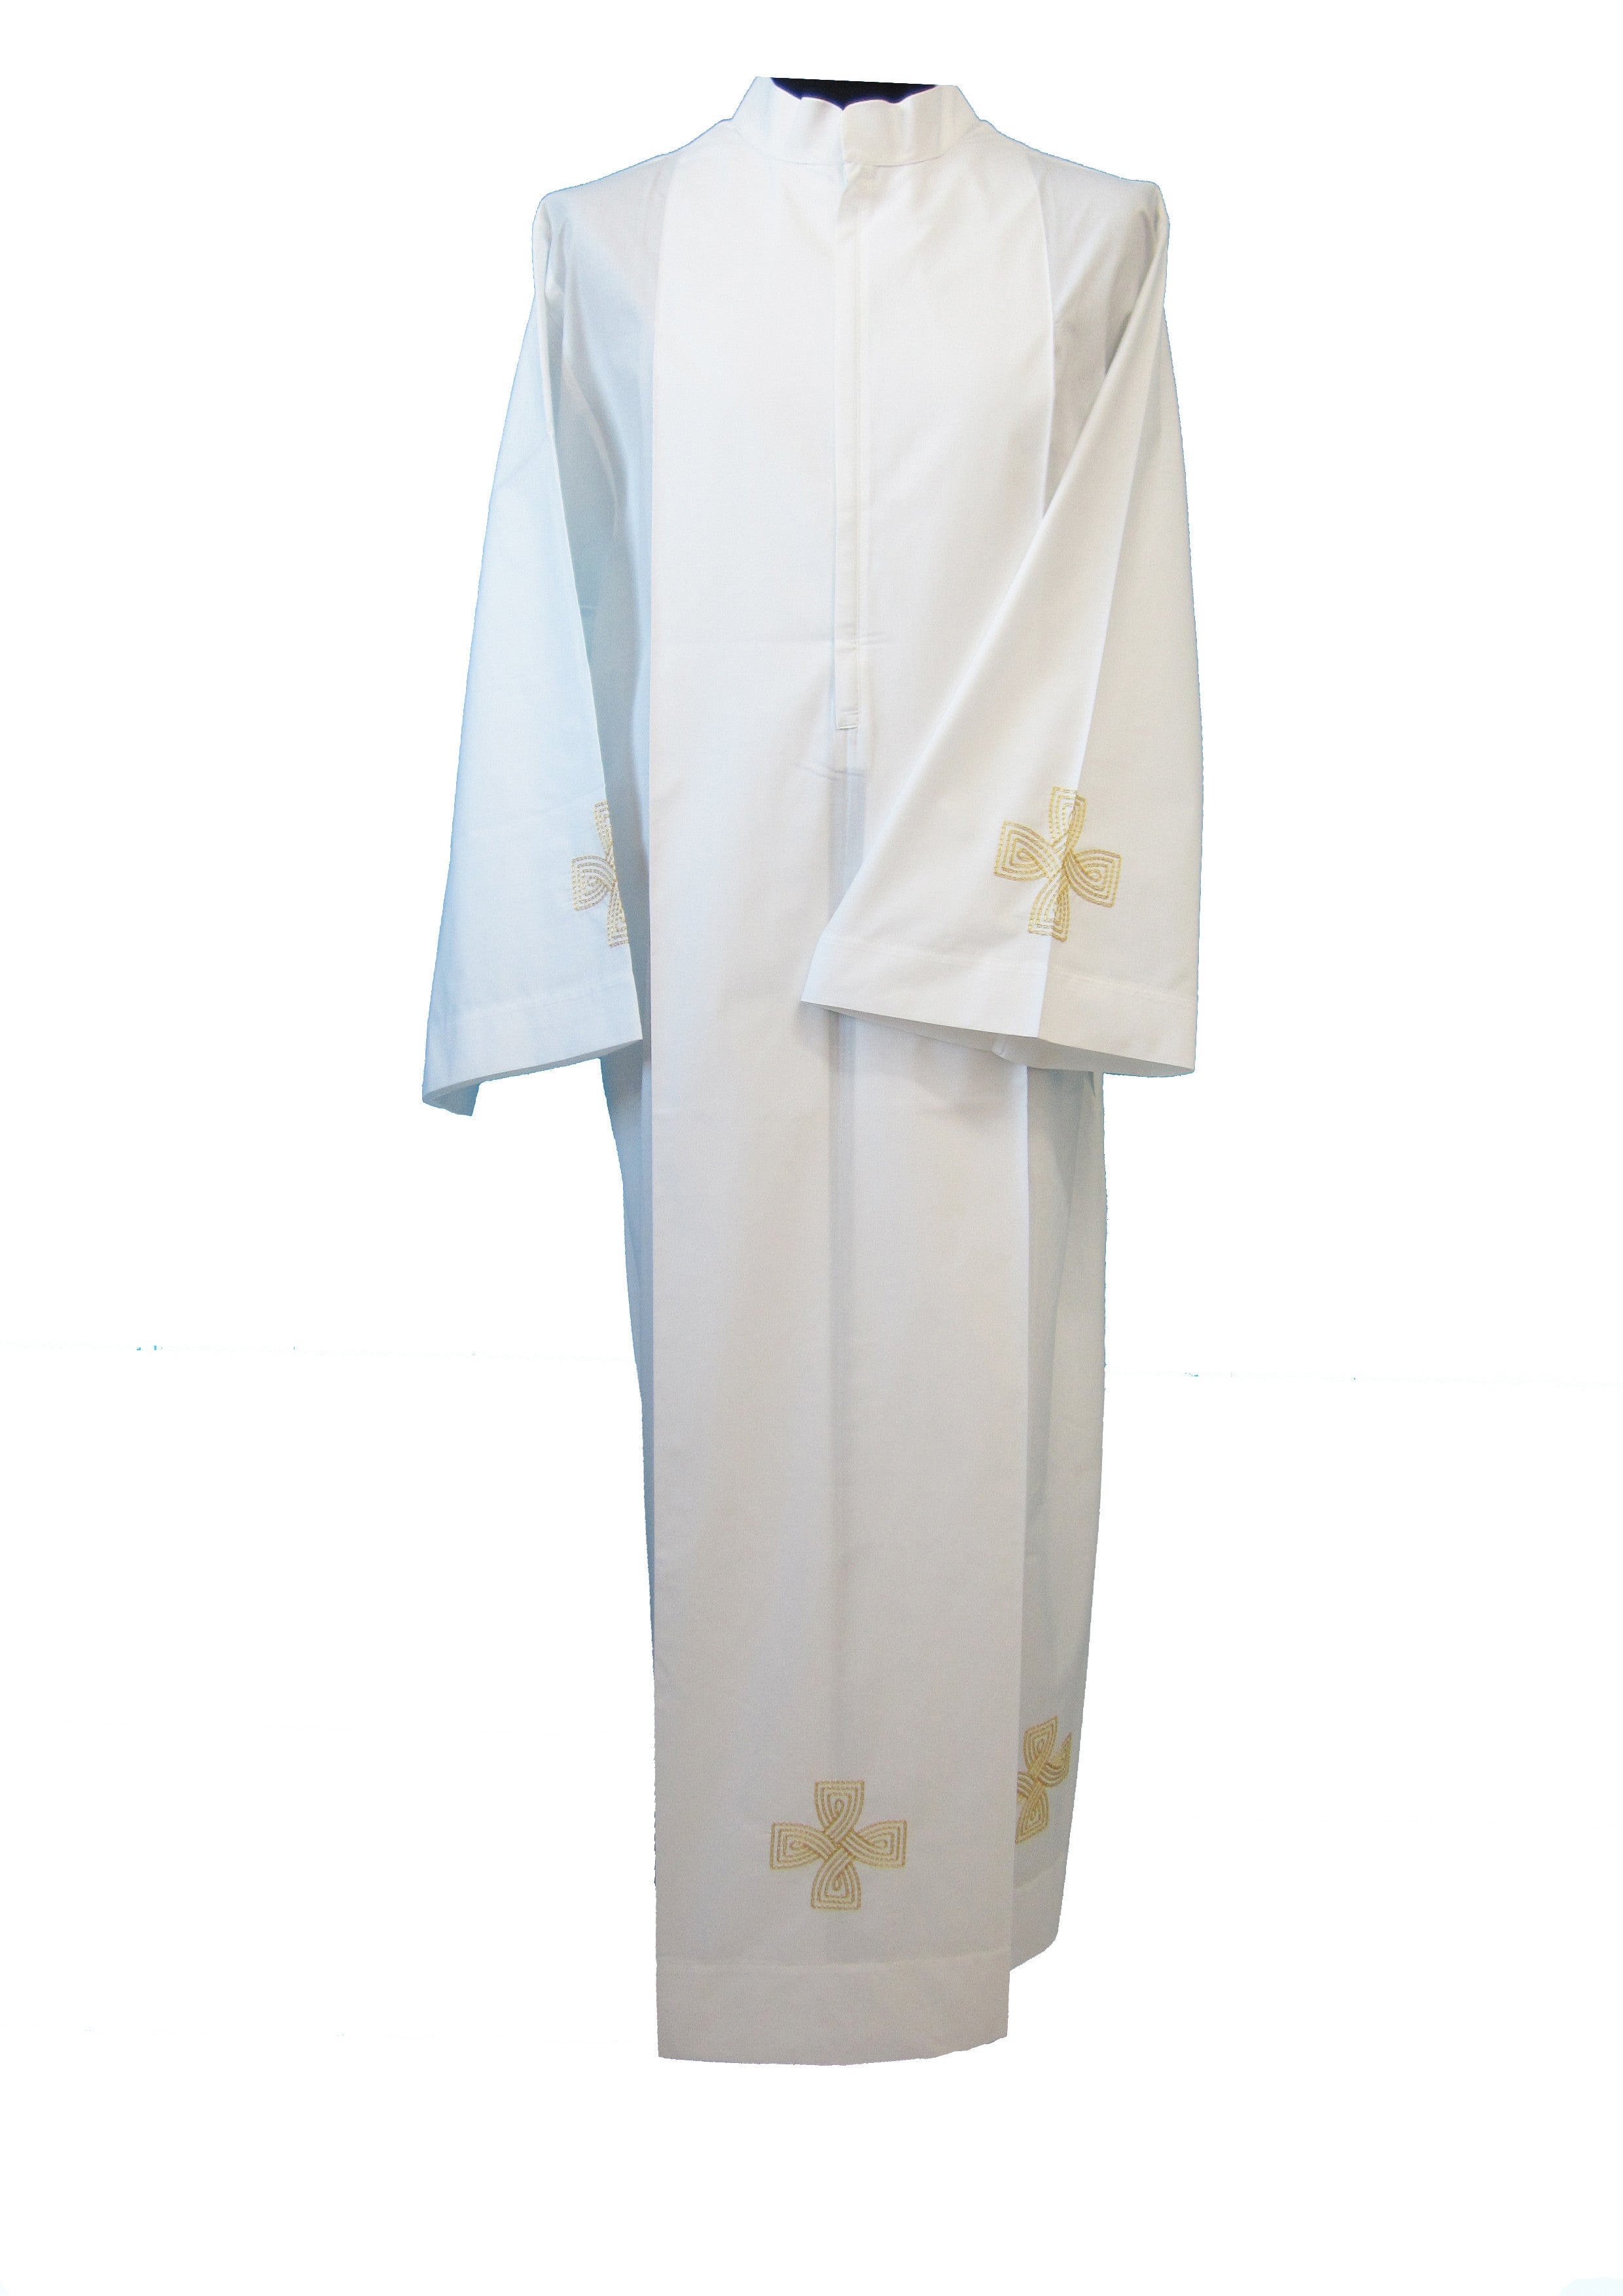 Camice da prete ricamo croce nelle varianti Cotone o Lana